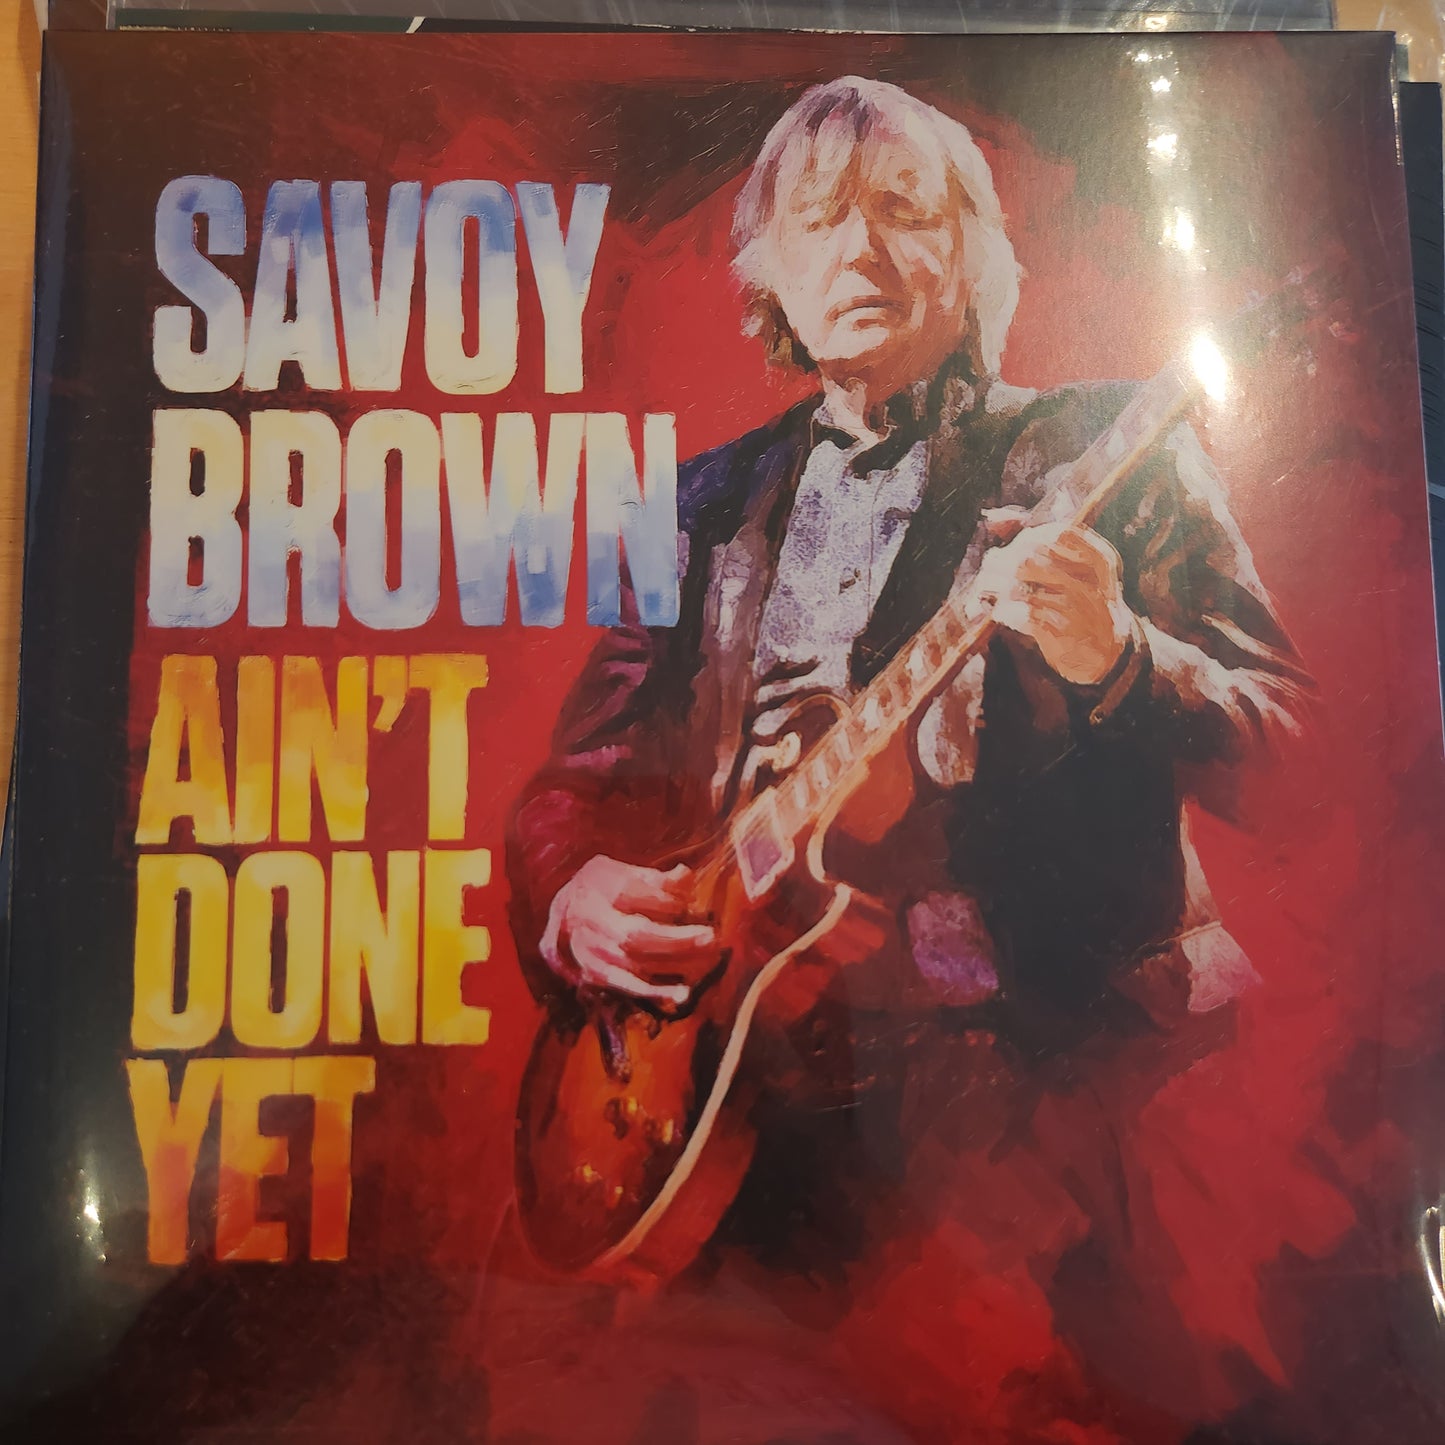 Savoy Brown - Ain't done yet - Vinyl Lp